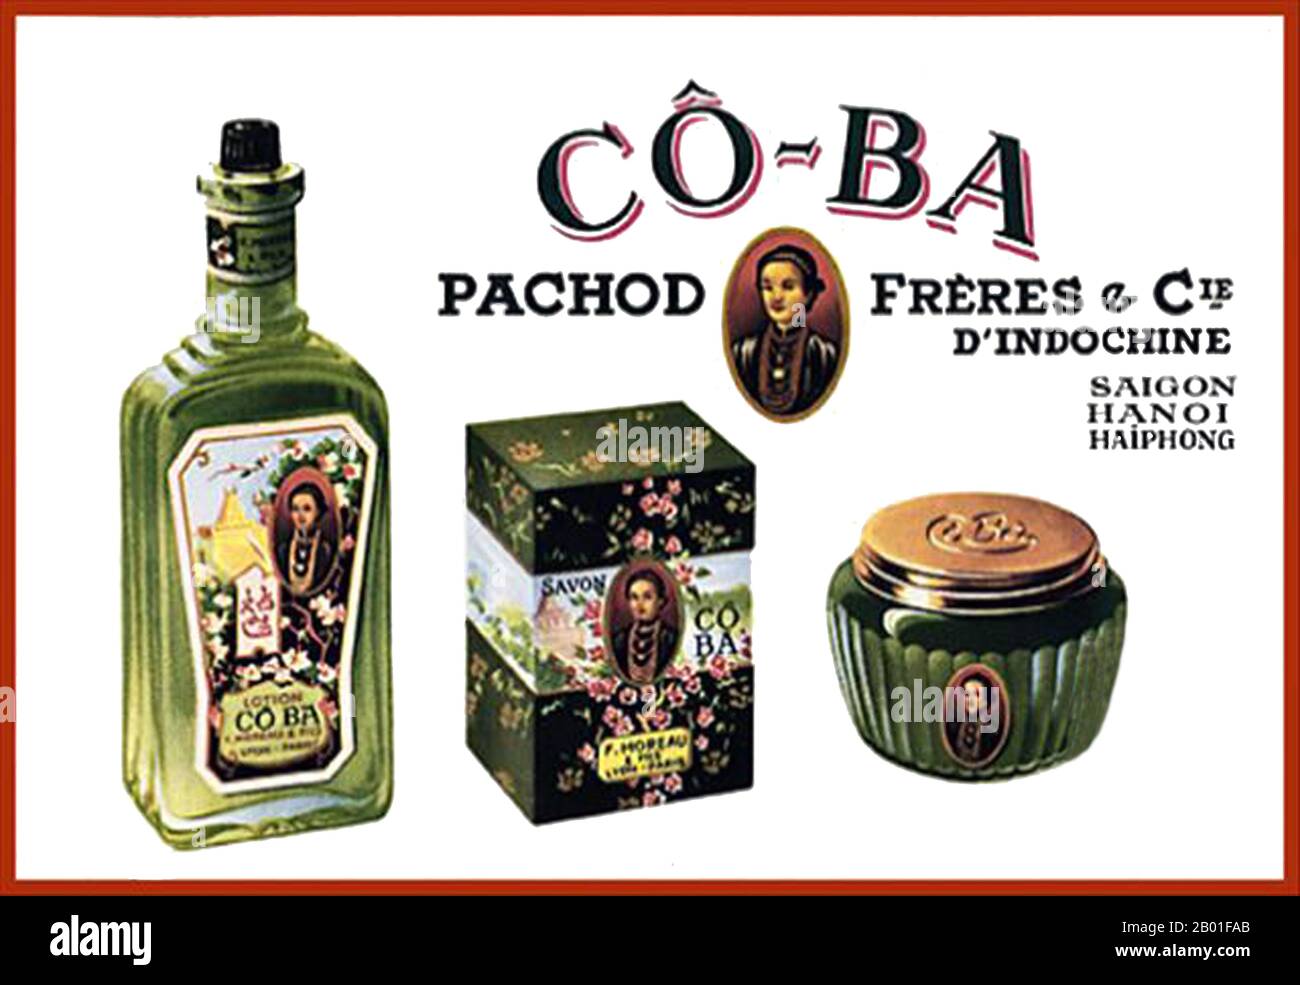 Vietnam: Advertisment for Pachod Freres Parfüms, c. 1940er. Werbung für Pachod Freres d'Indochine - Saigon, Hanoi, Haiphong. Saigon und insbesondere die Rue Catinat waren bekannt für ihre Parfümerien. Stockfoto